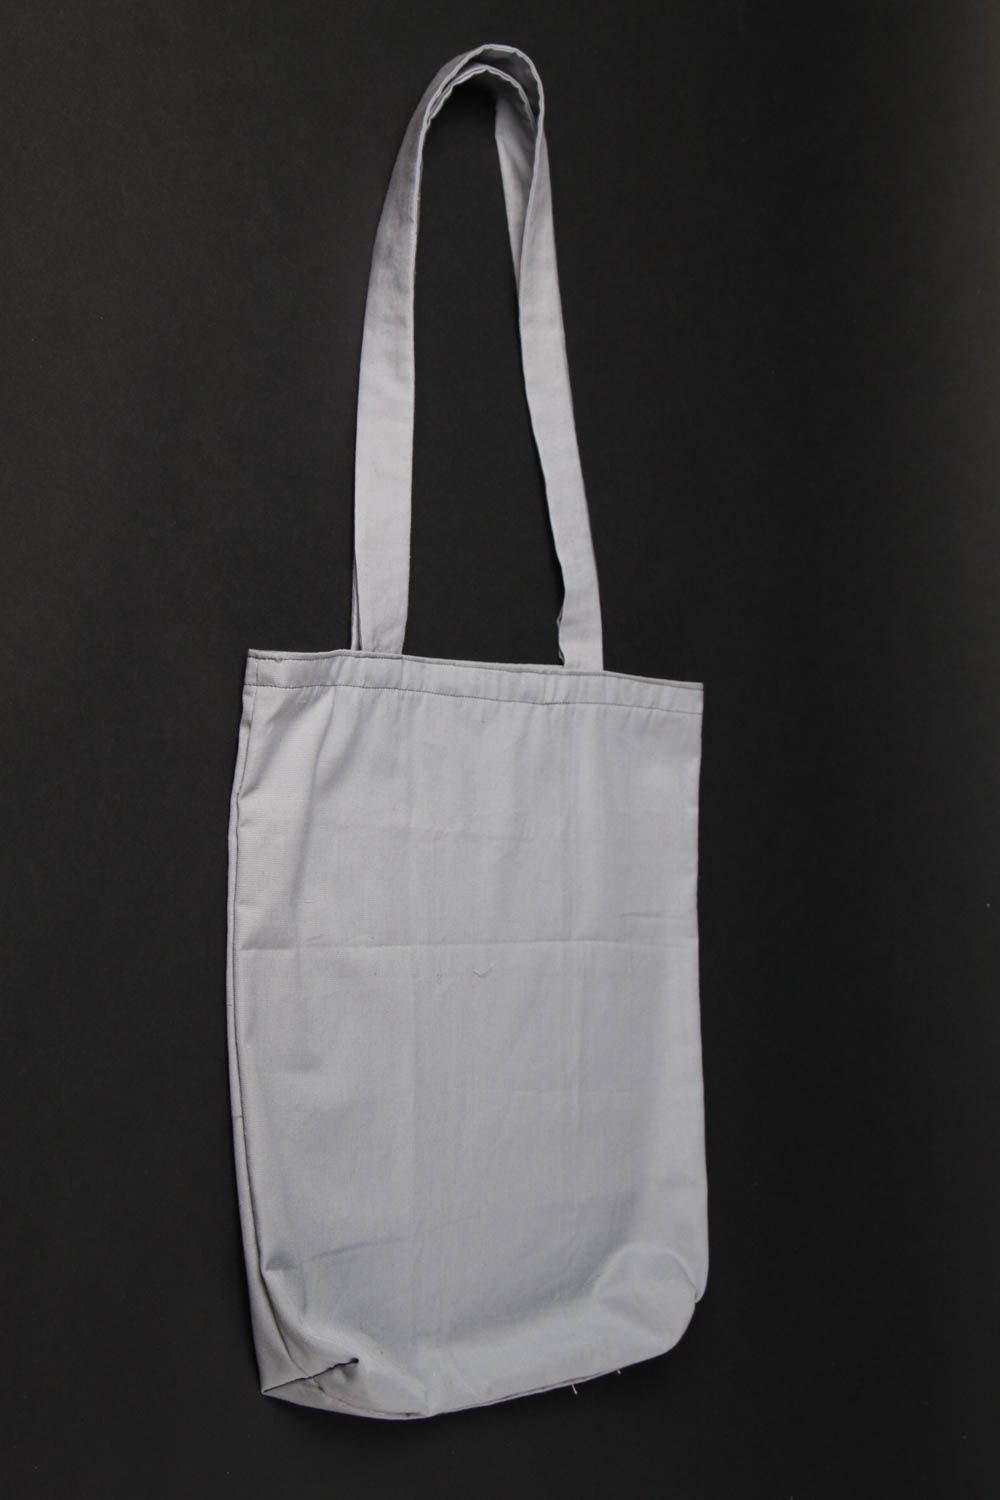 Расписная сумка ручной работы женская сумка из хлопка тканевая сумка на плечо фото 2